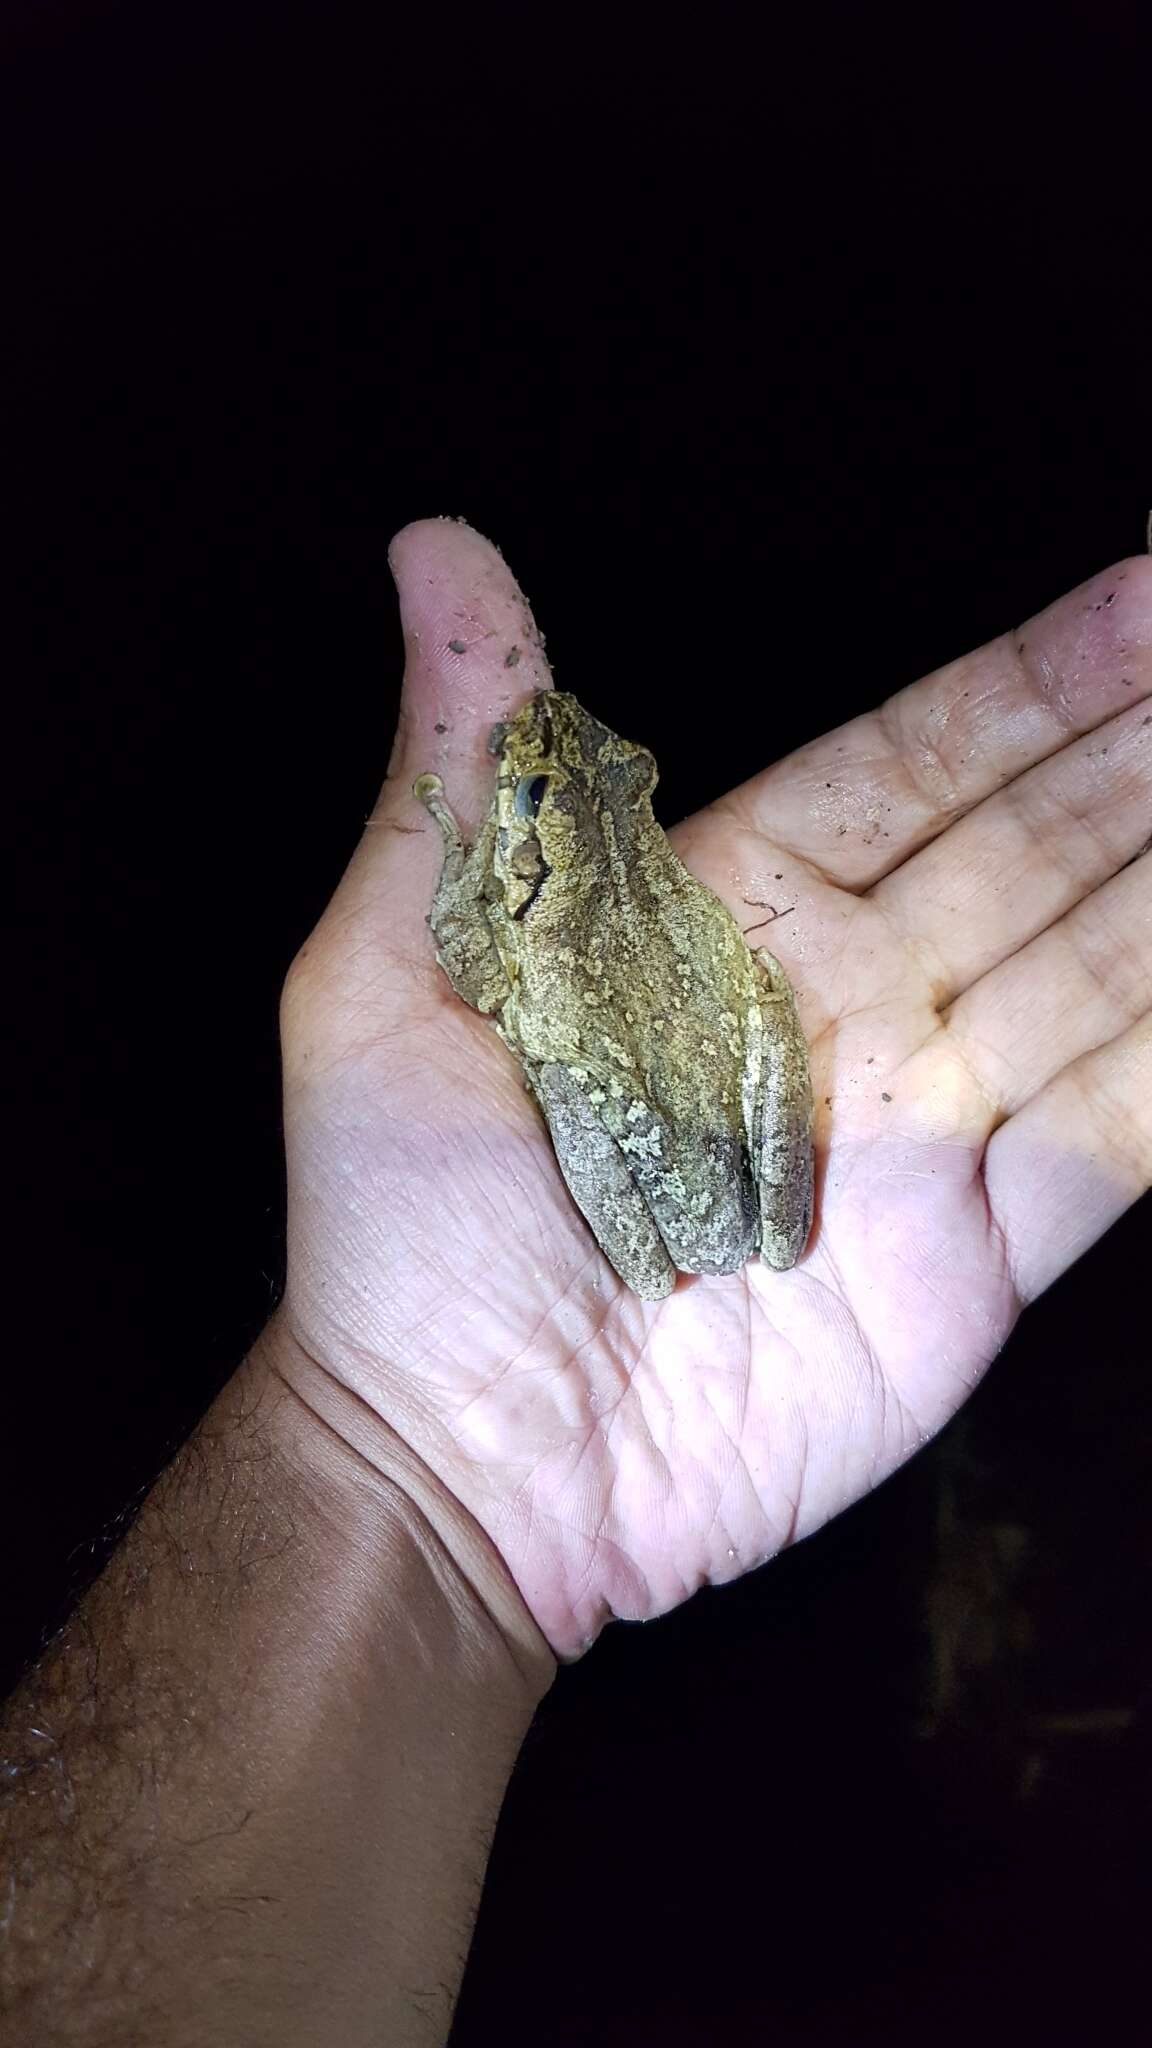 Image of Hispaniola giant treefrog